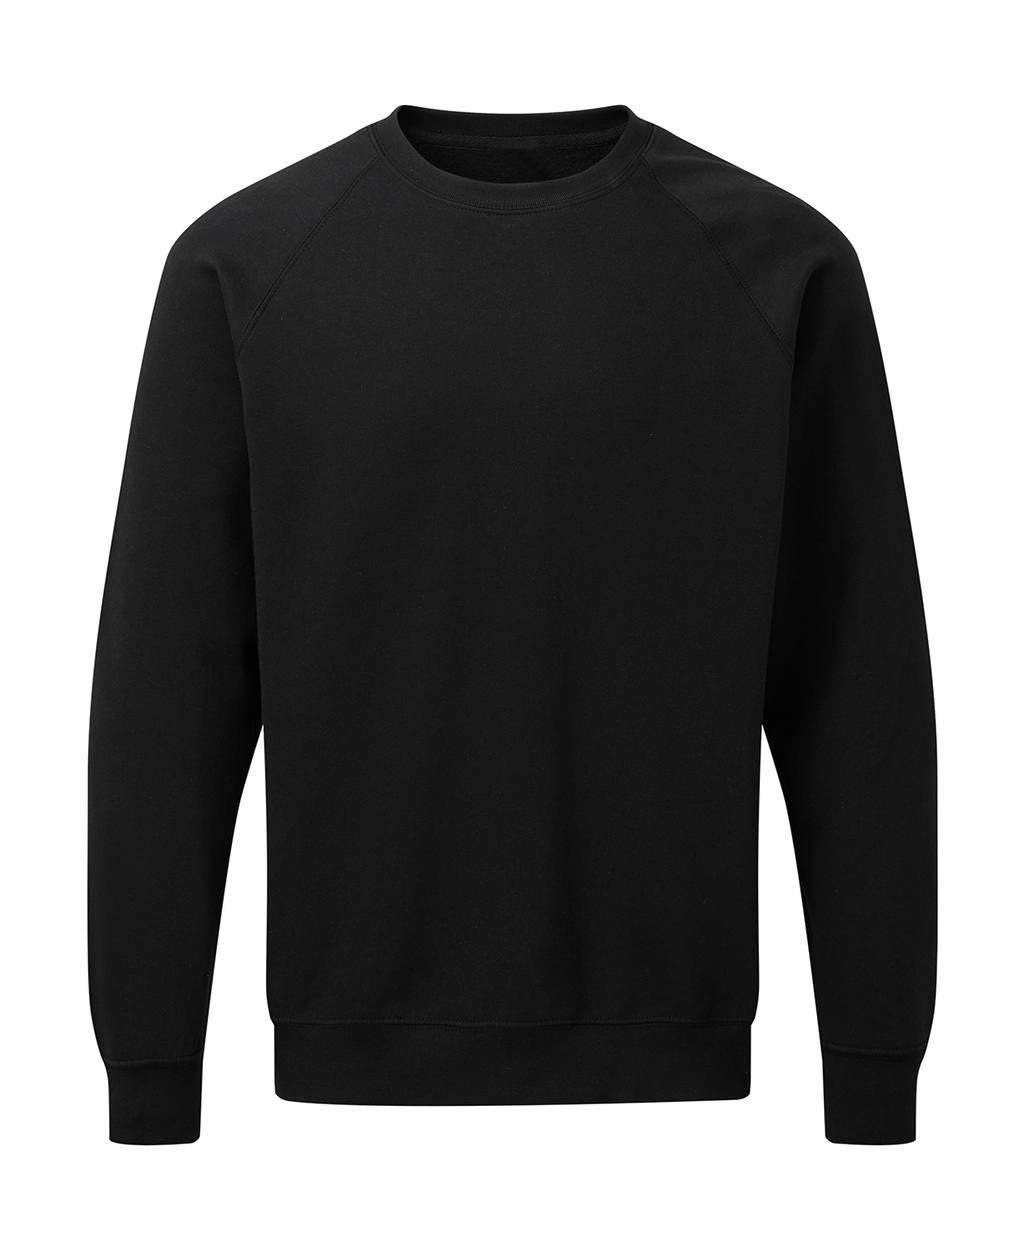 Raglan Sweatshirt Men zum Besticken und Bedrucken in der Farbe Black mit Ihren Logo, Schriftzug oder Motiv.